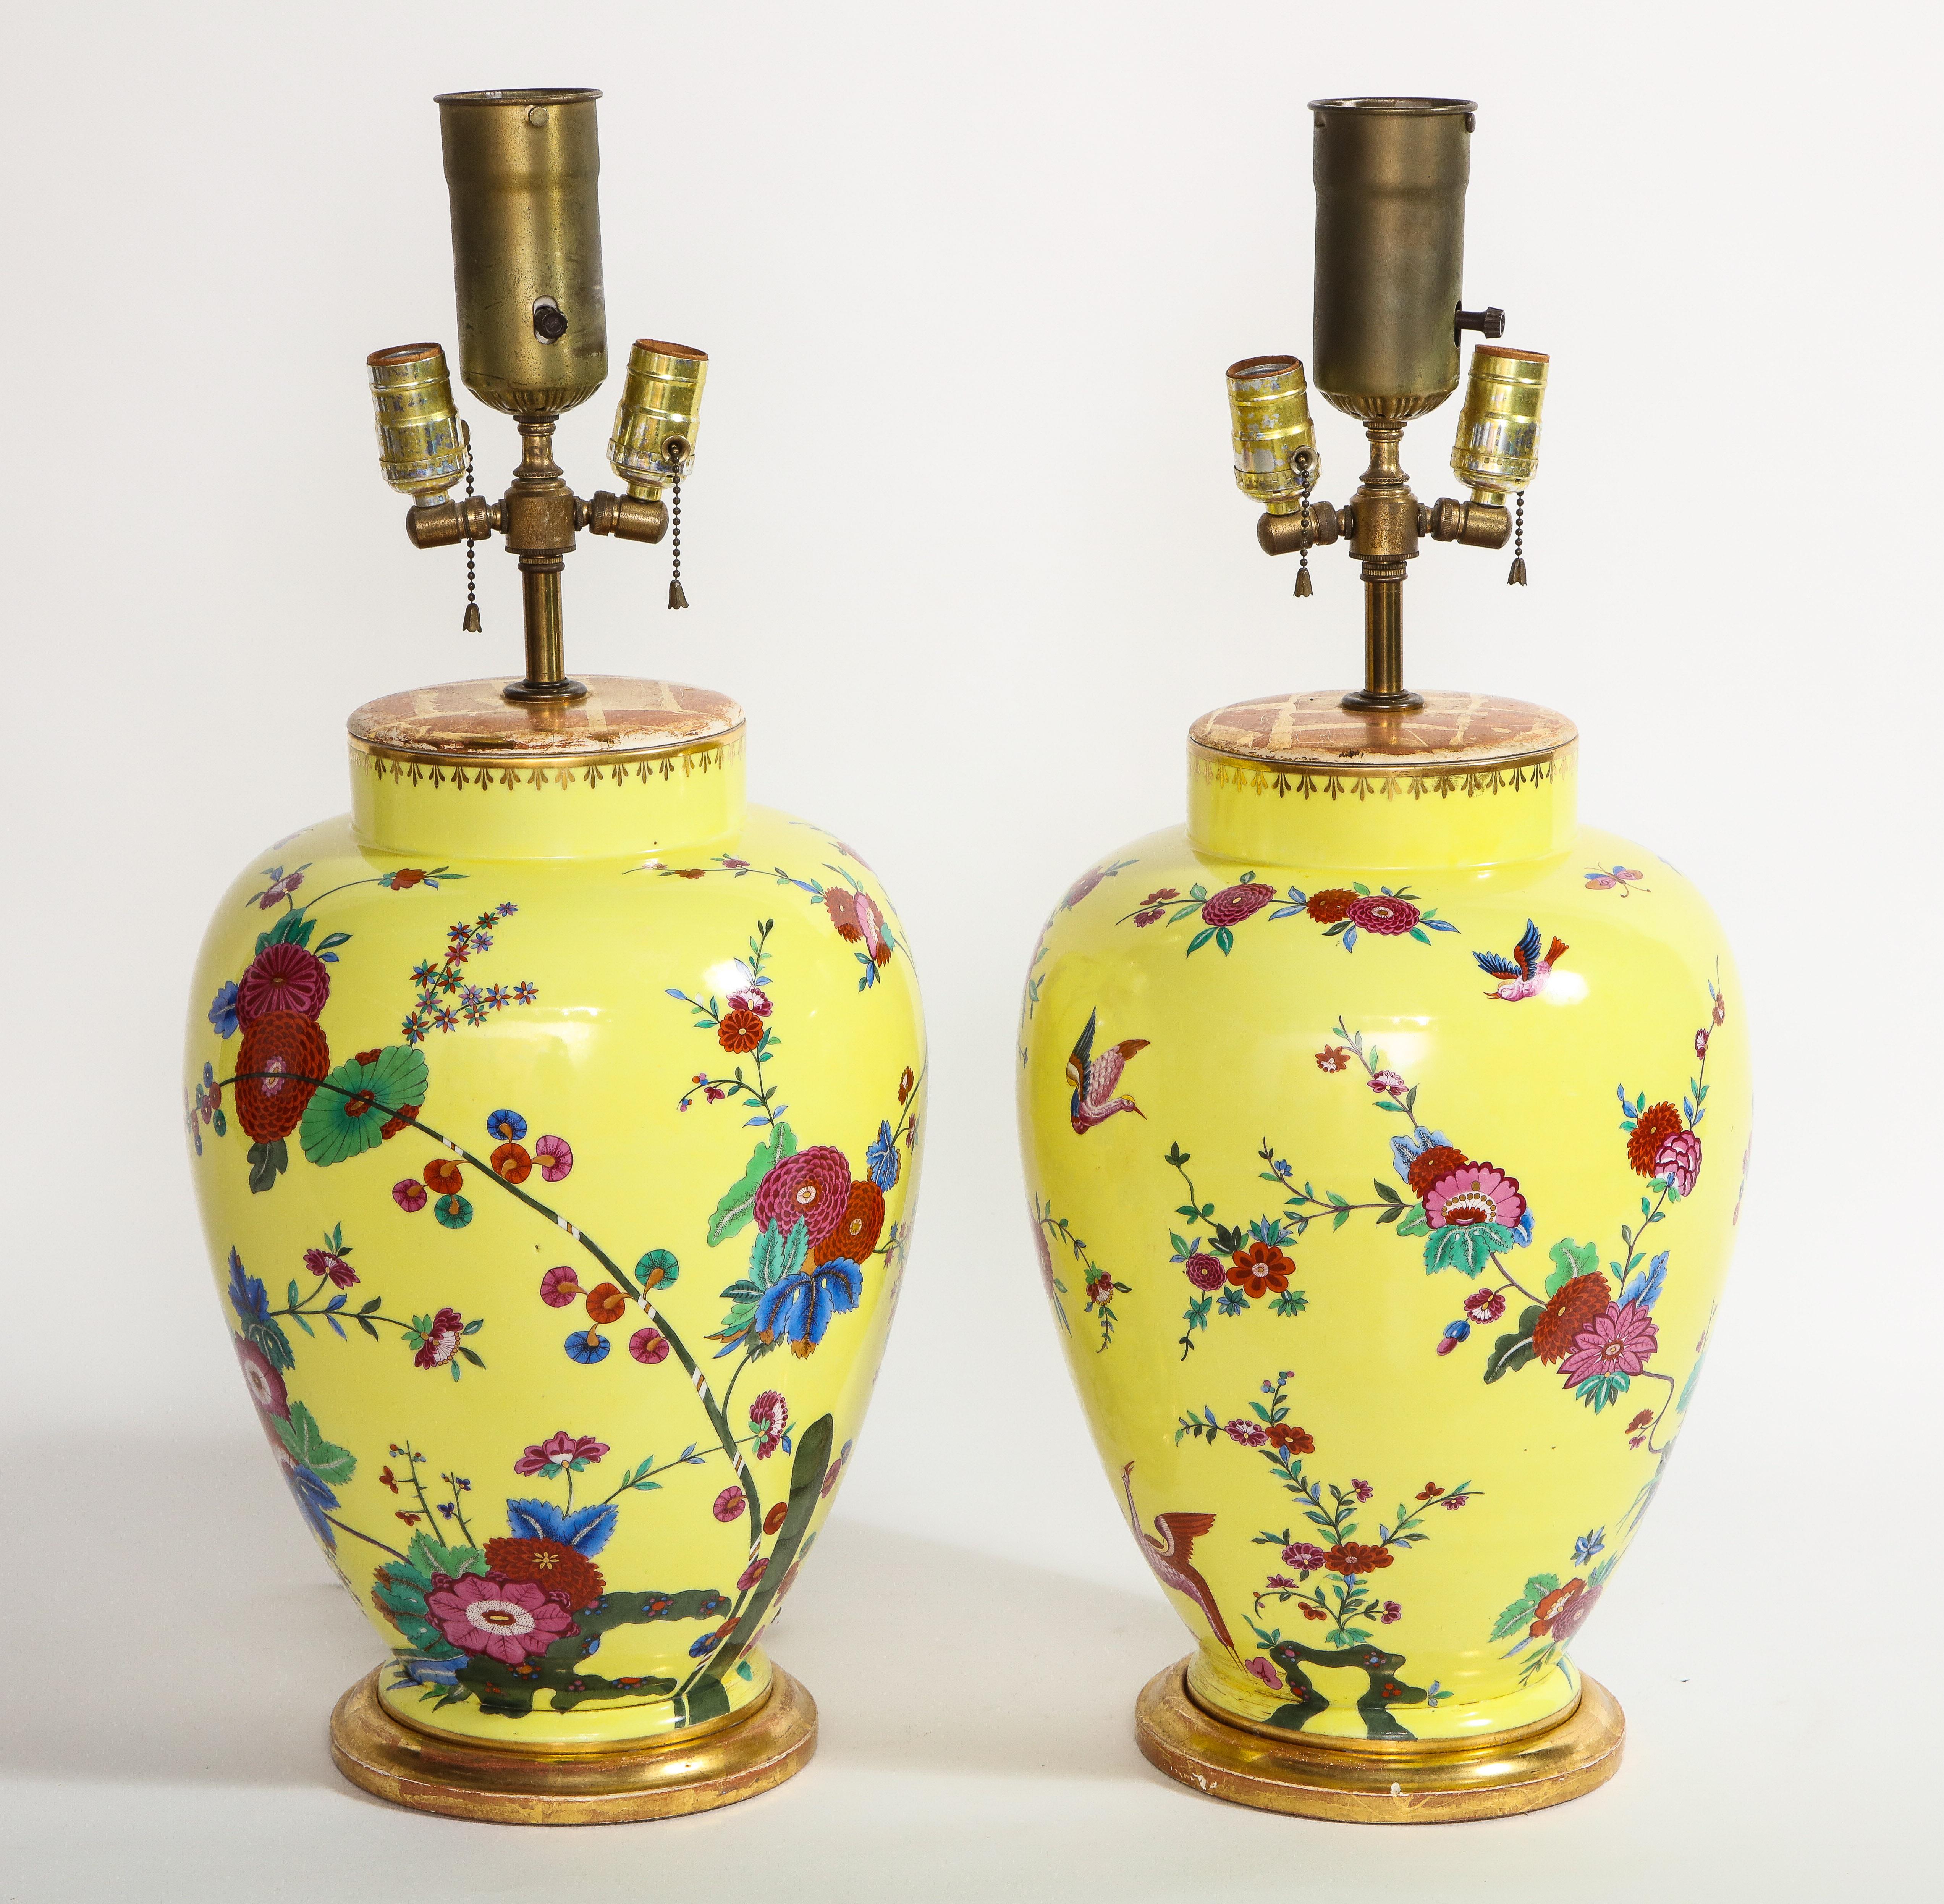 Une paire de beaux vases en porcelaine allemande à fond jaune montés comme lampes, peints à la main avec des décorations de fleurs, d'oiseaux et d'insectes. Chacune de ces lampes est joliment peinte à la main avec un magnifique fond jaune et